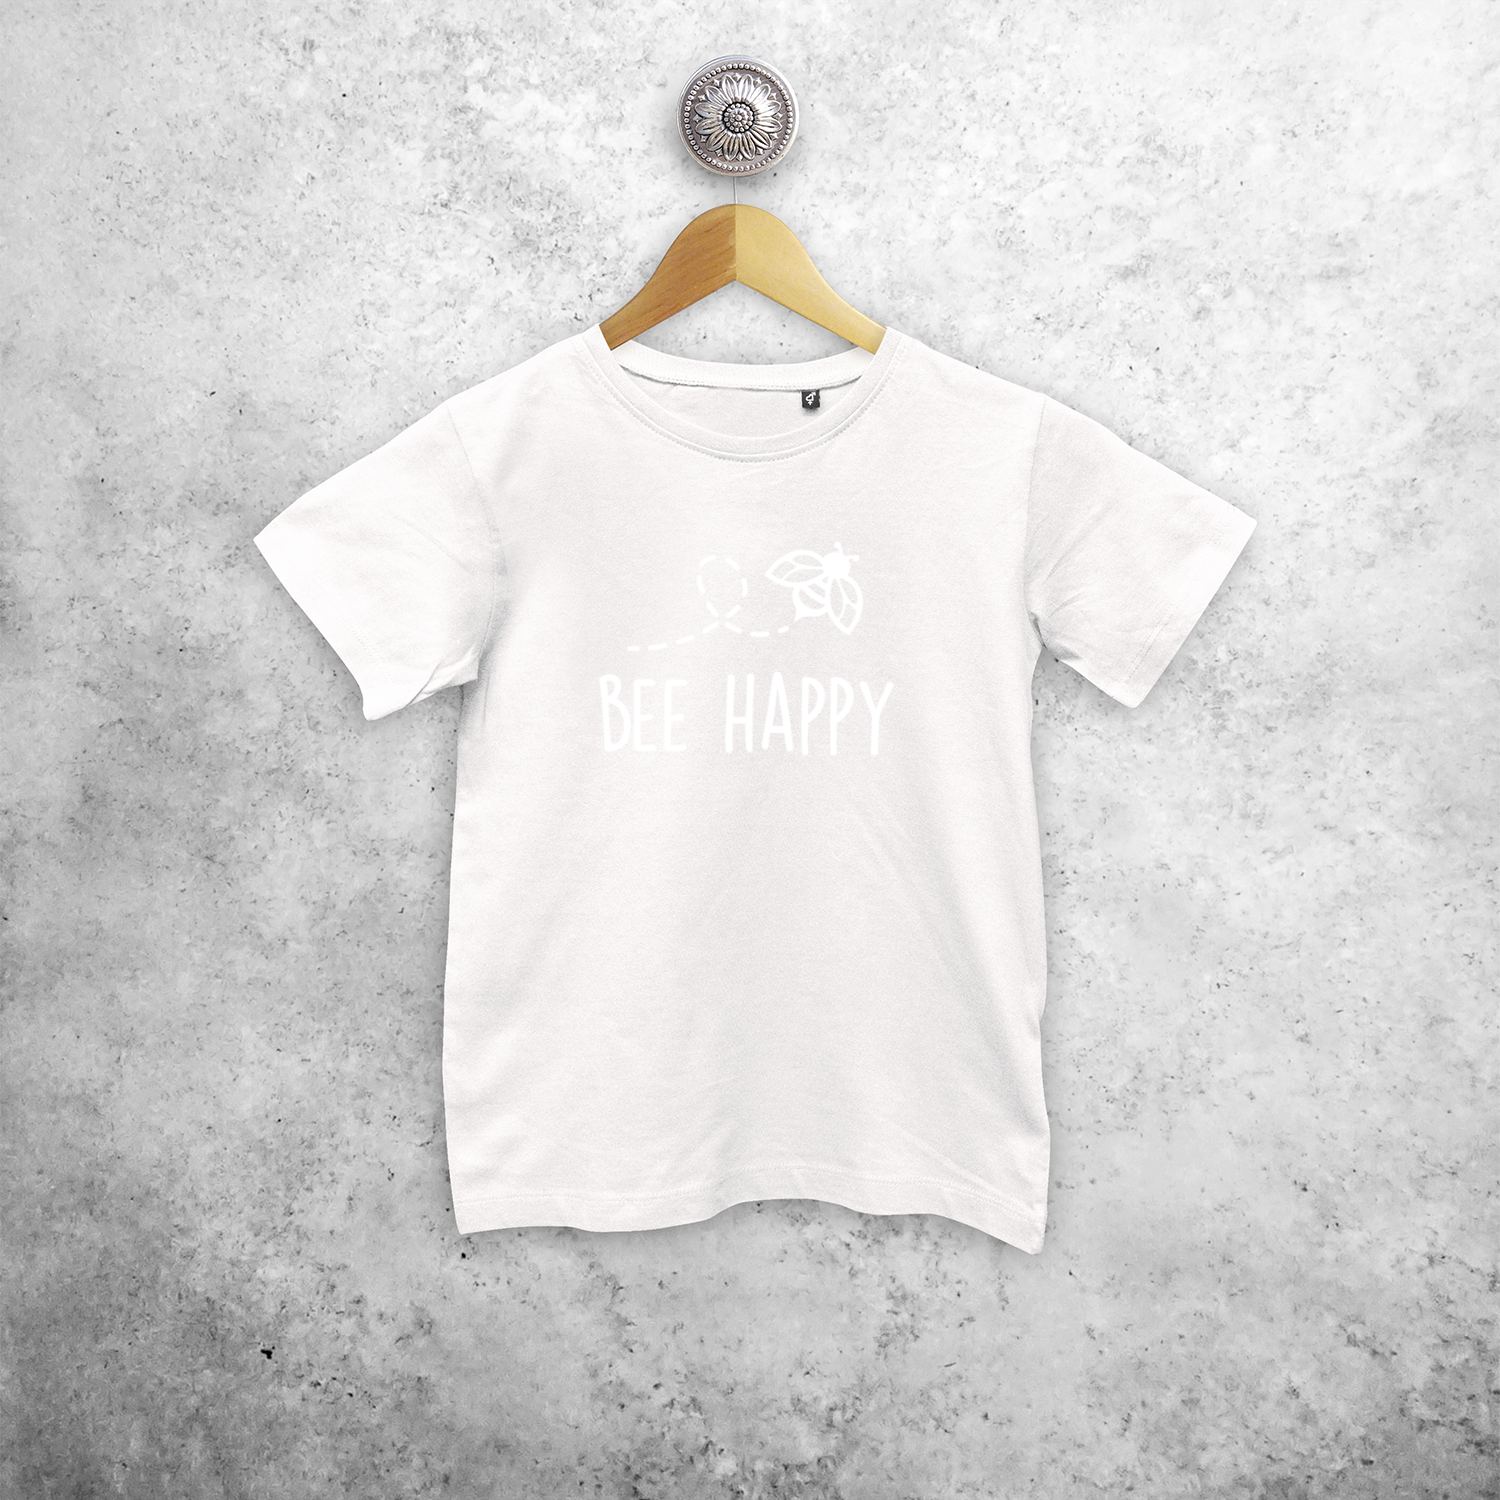 Bee happy' magisch kind shirt met korte mouwen